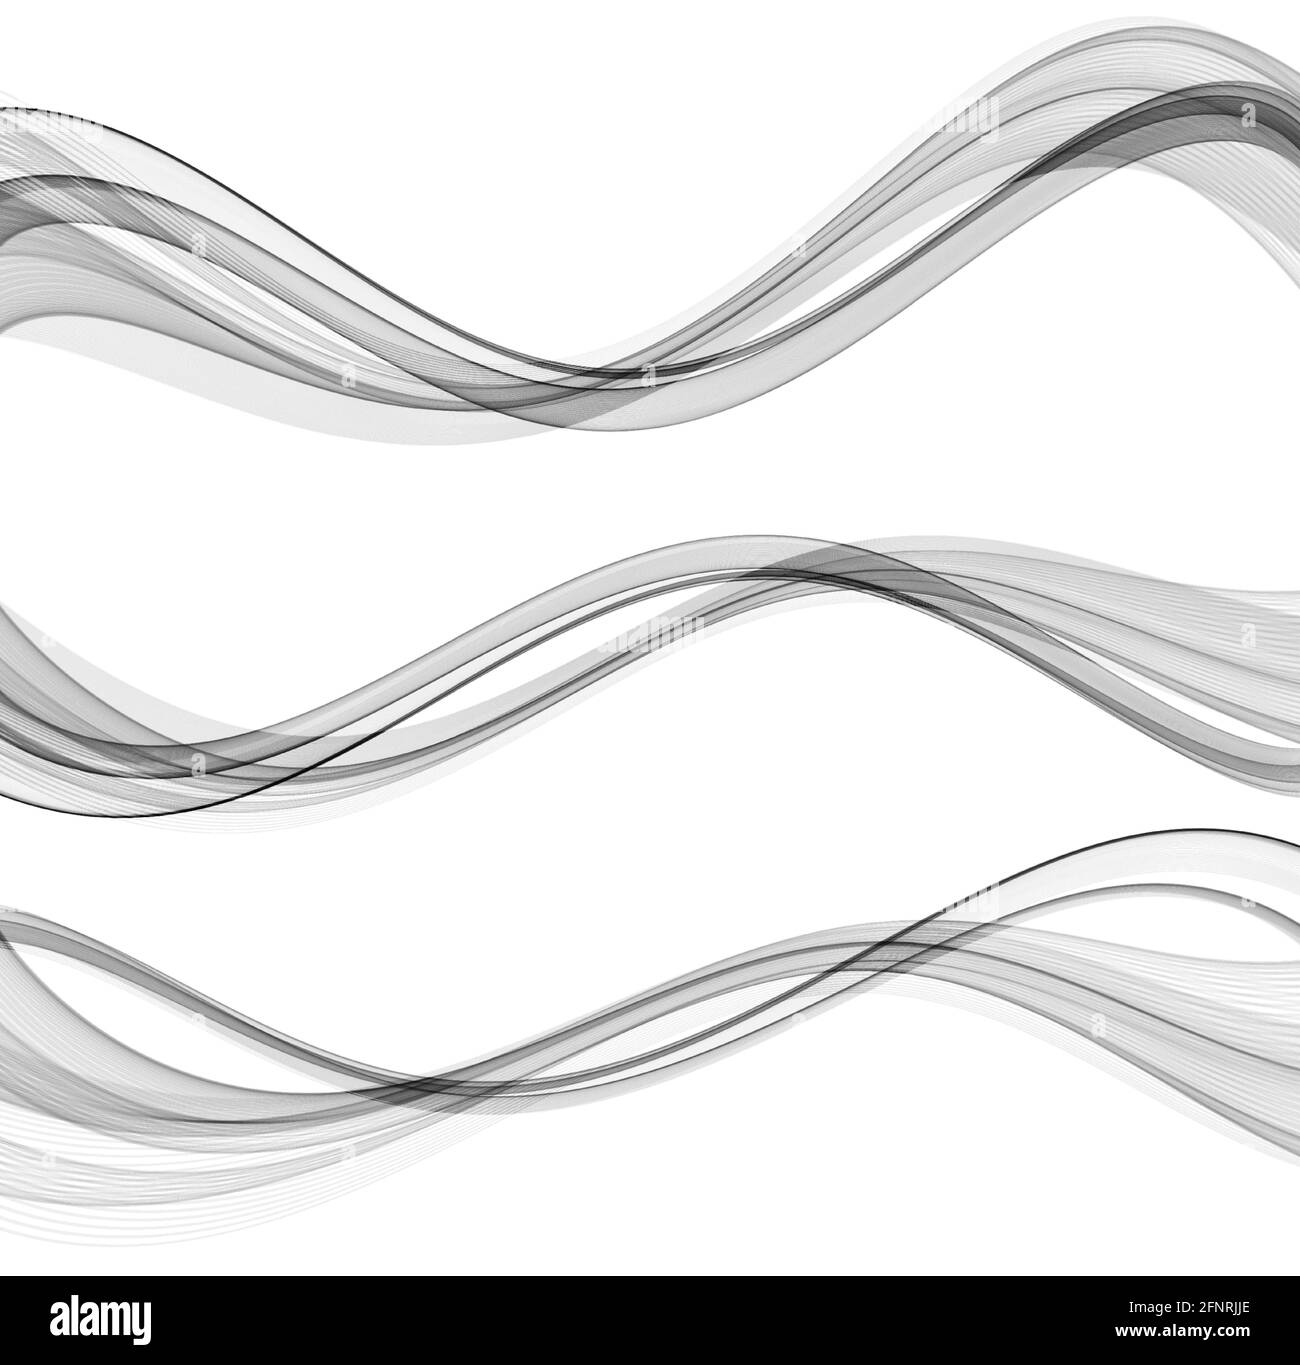 Lignes d'ondes vectorielles abstraites de flux isolées sur fond blanc. Élément de conception pour la technologie, la science, le concept moderne. Illustration de Vecteur